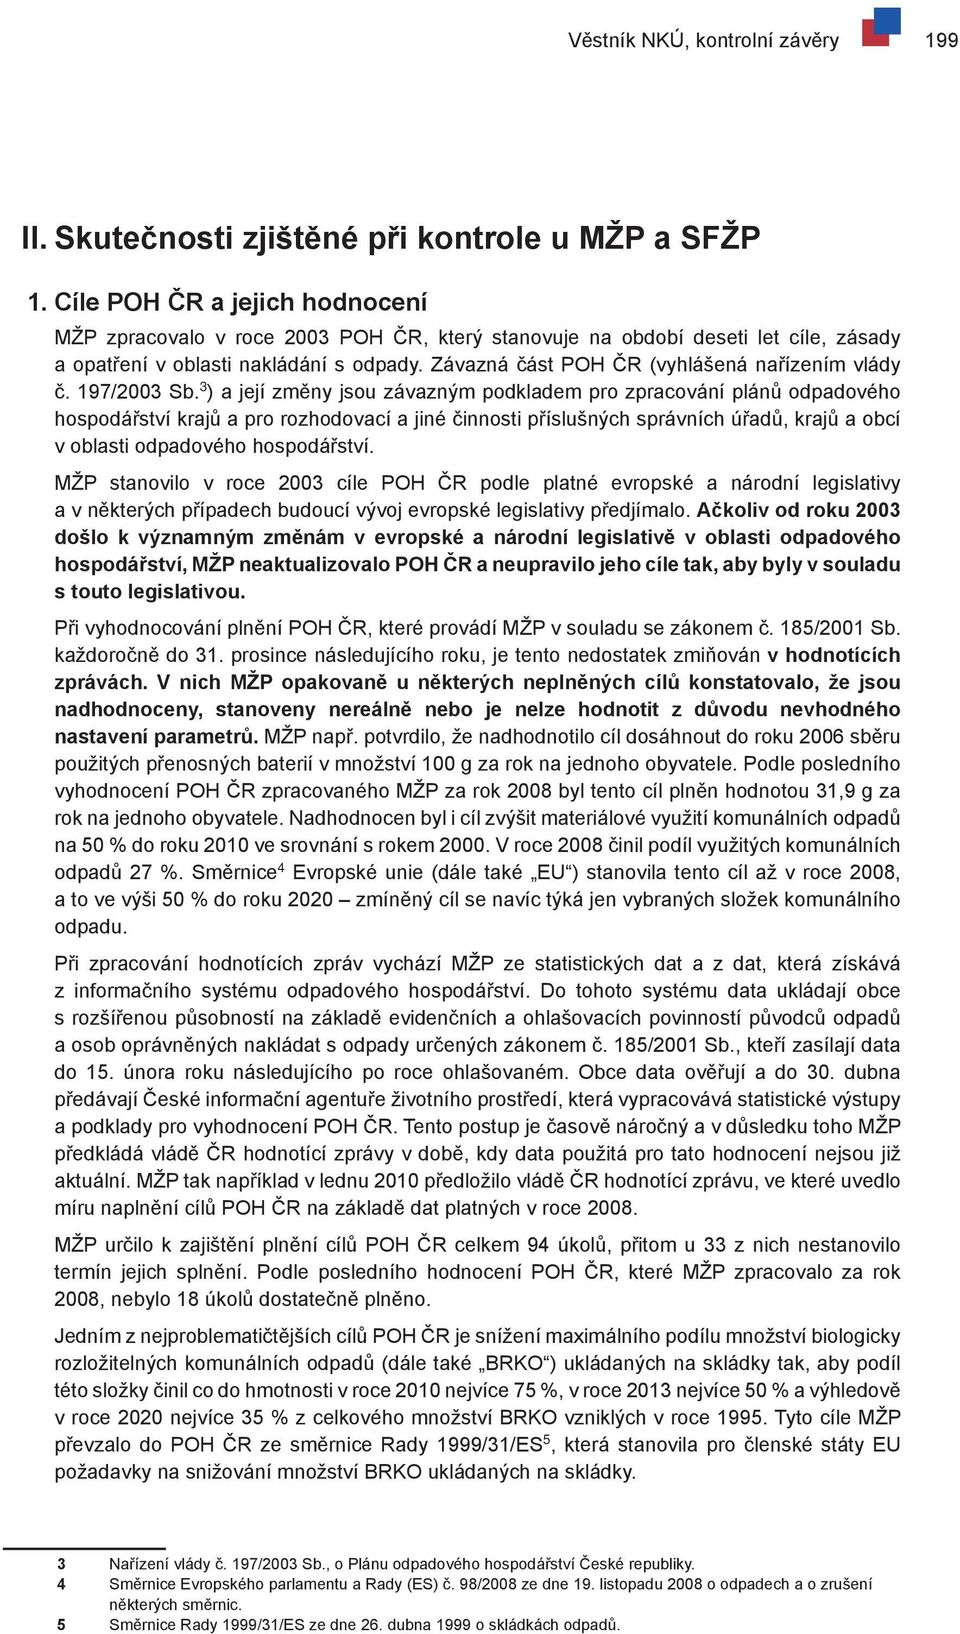 Závazná část POH ČR (vyhlášená nařízením vlády č. 197/2003 Sb.